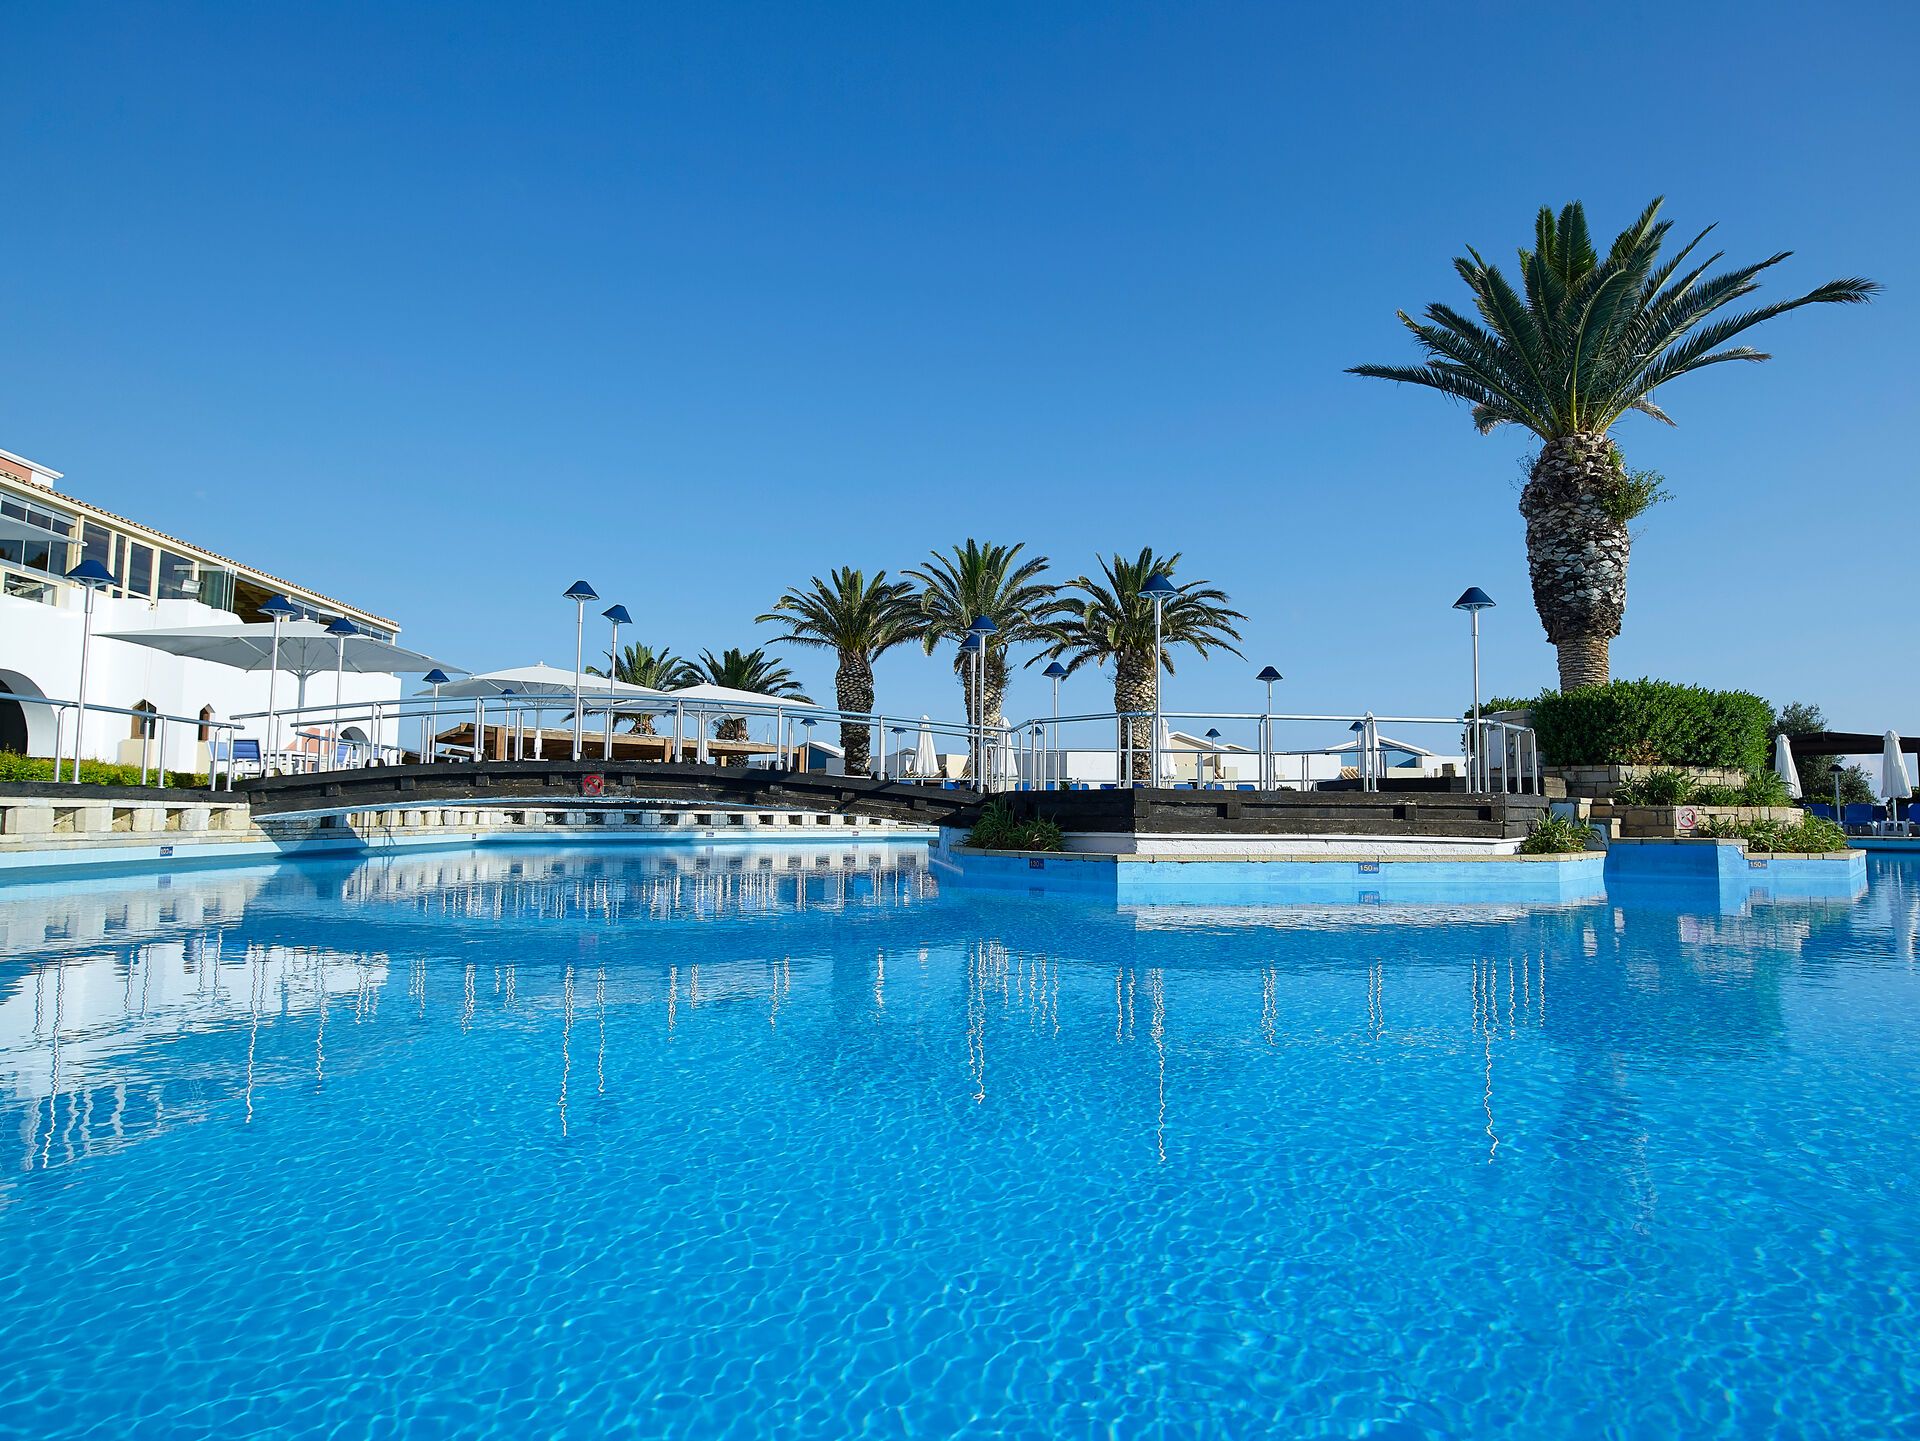 Crète - Hersonissos - Grèce - Iles grecques - Hotel Aldemar Knossos Royal 5*